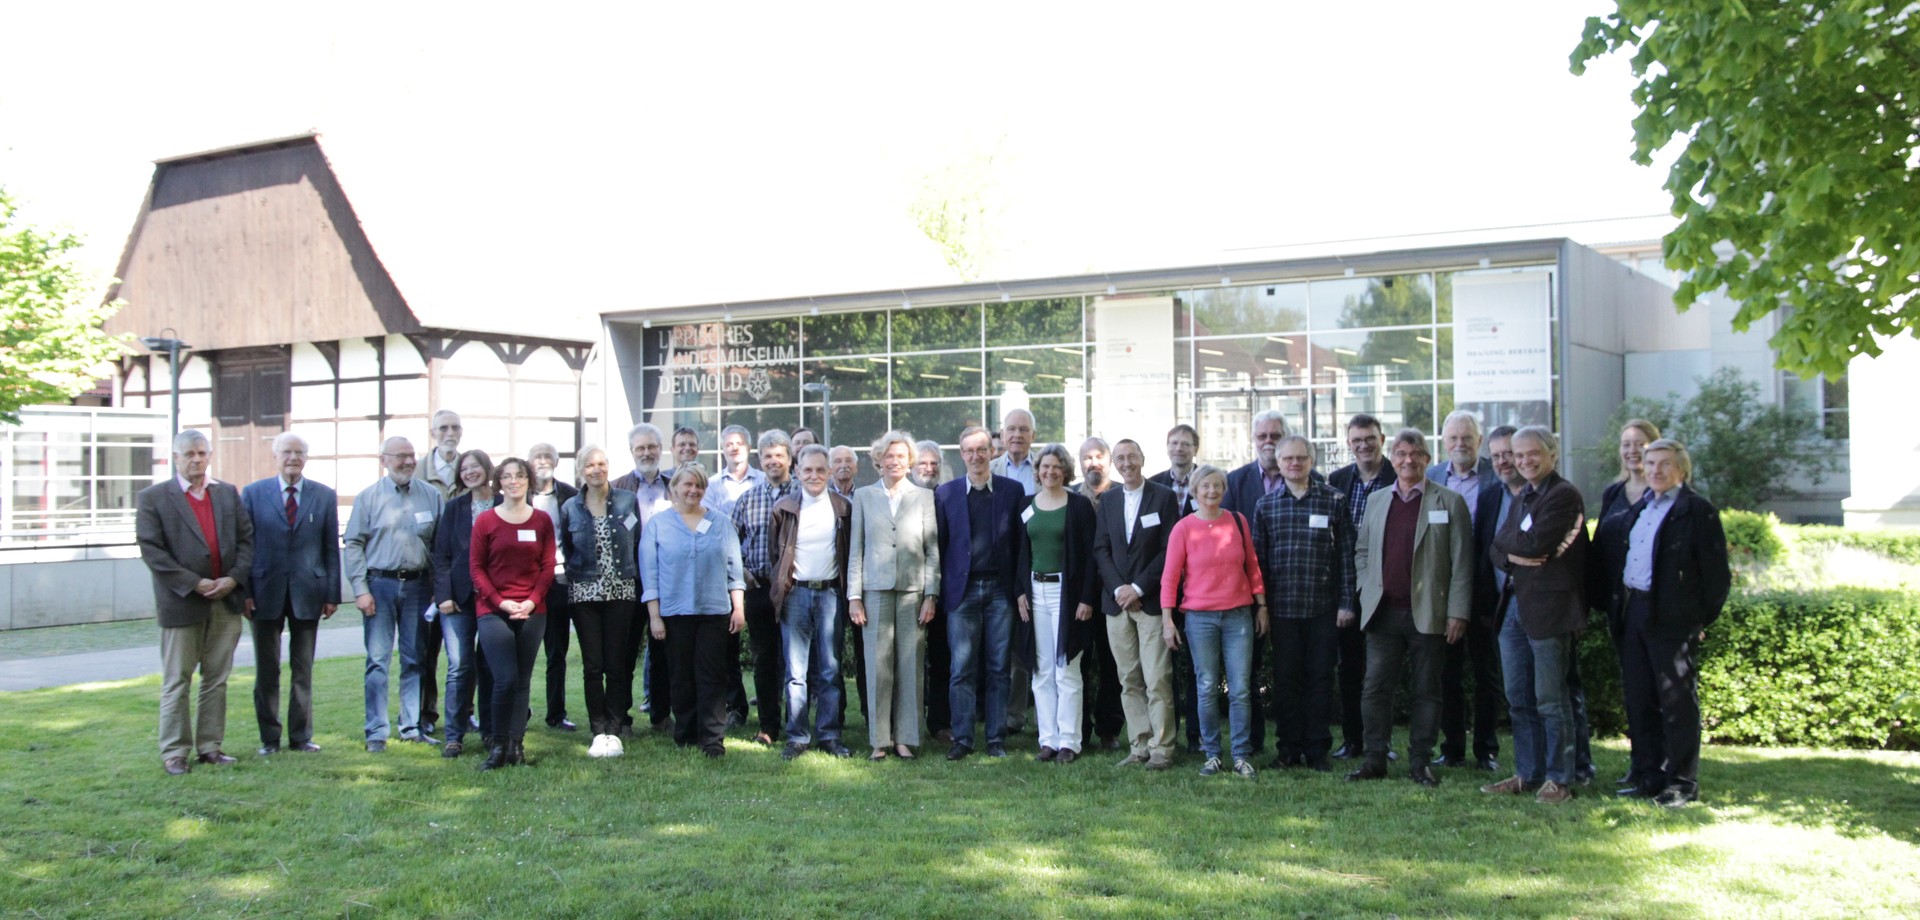 Mitglieder der Altertumskommission bei der Jahreshauptversammlung 2018 (Foto: Altertumskommission).